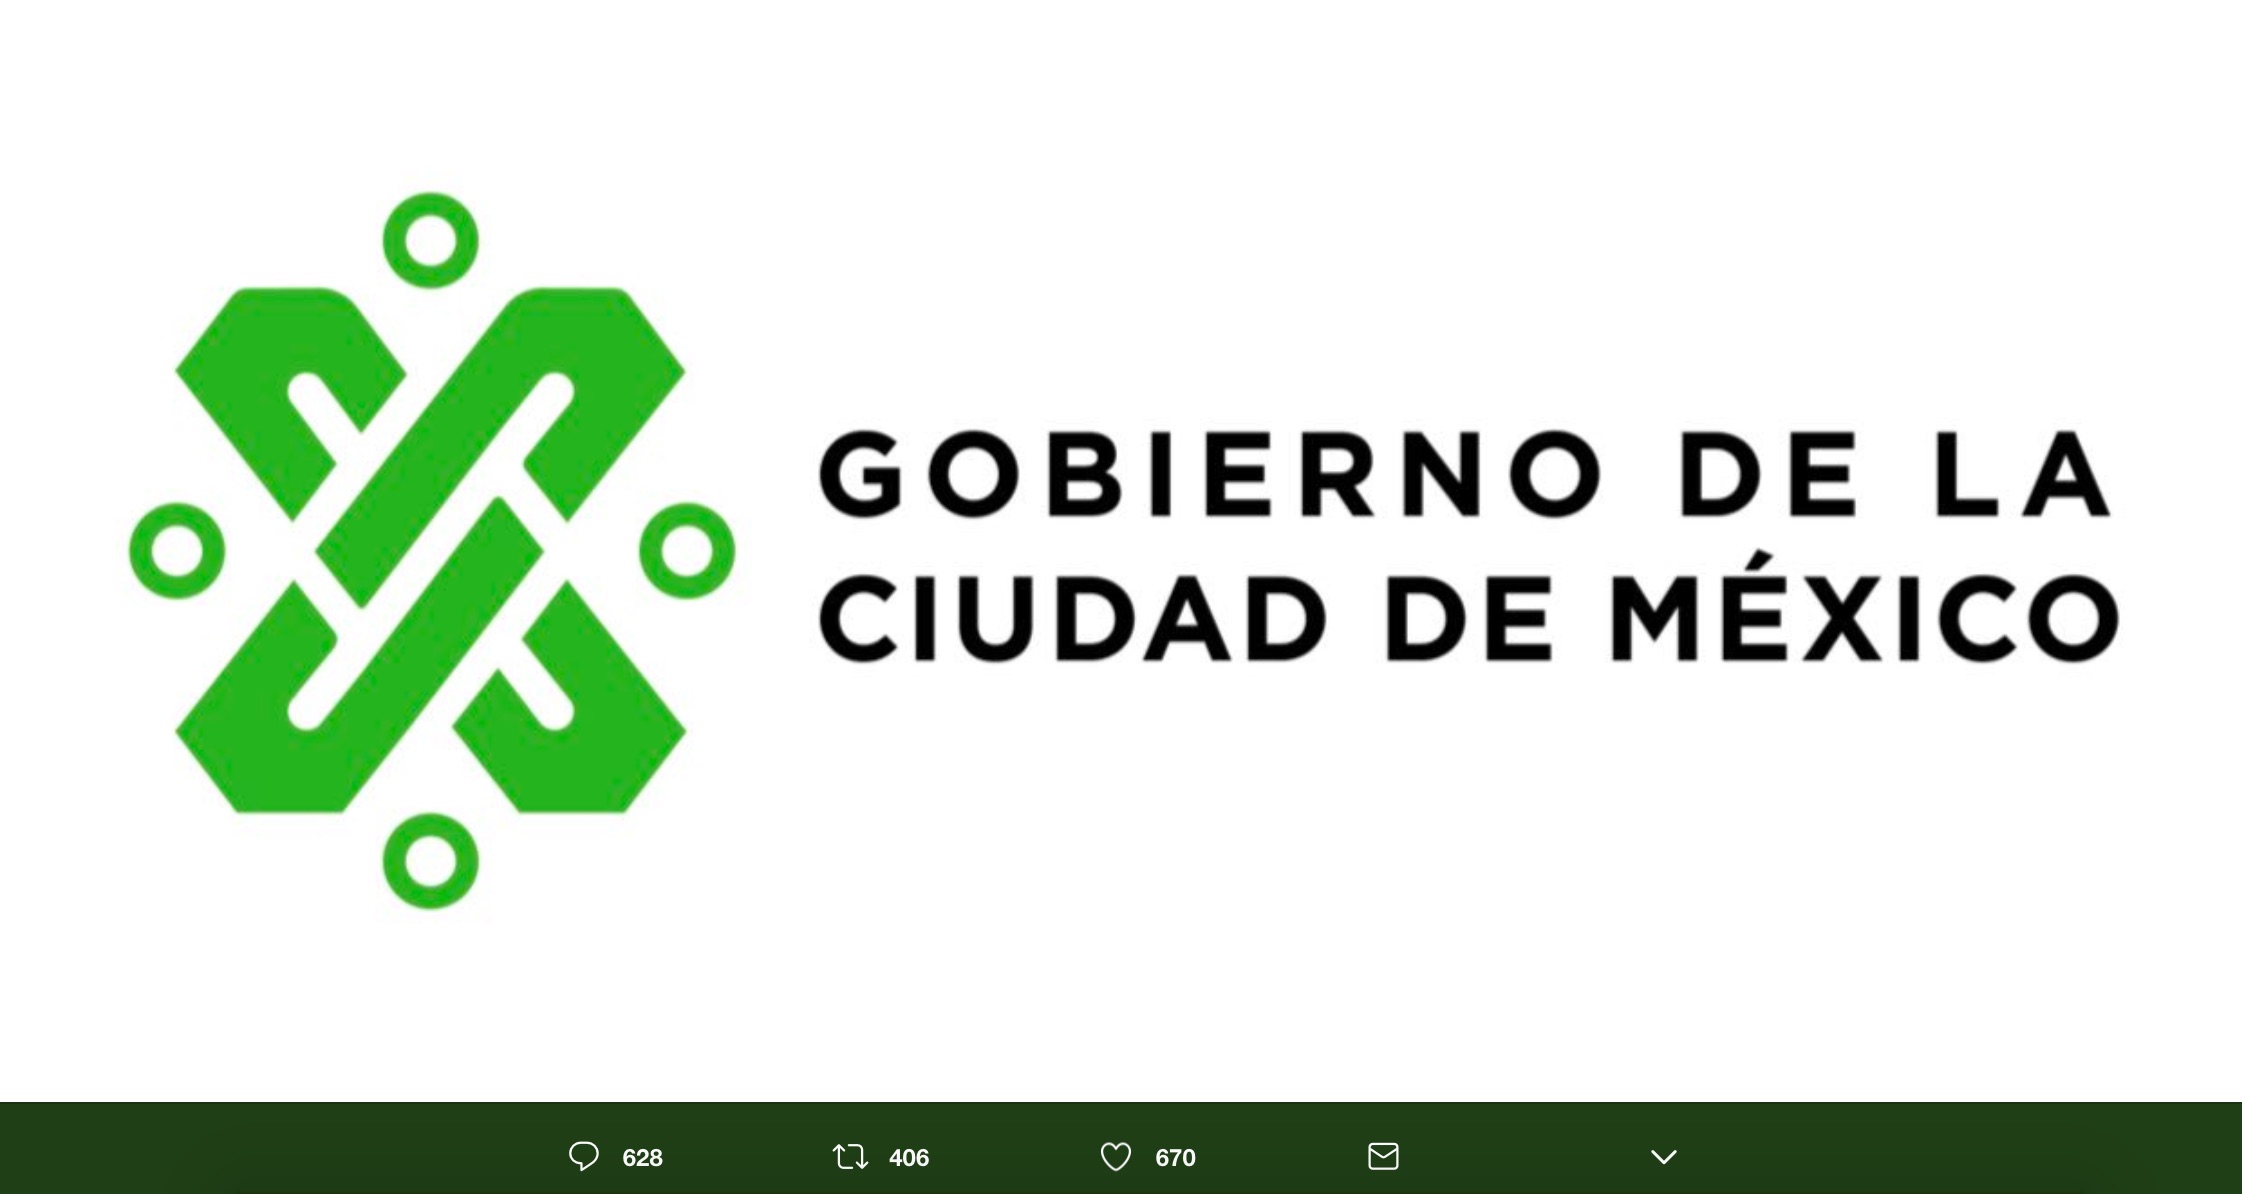 El nuevo logo de la CDMX está basado el Códice Mendocino, tiene un color verde que definitivamente cambiará el rosa mexicano al que estábamos acostumbrados.